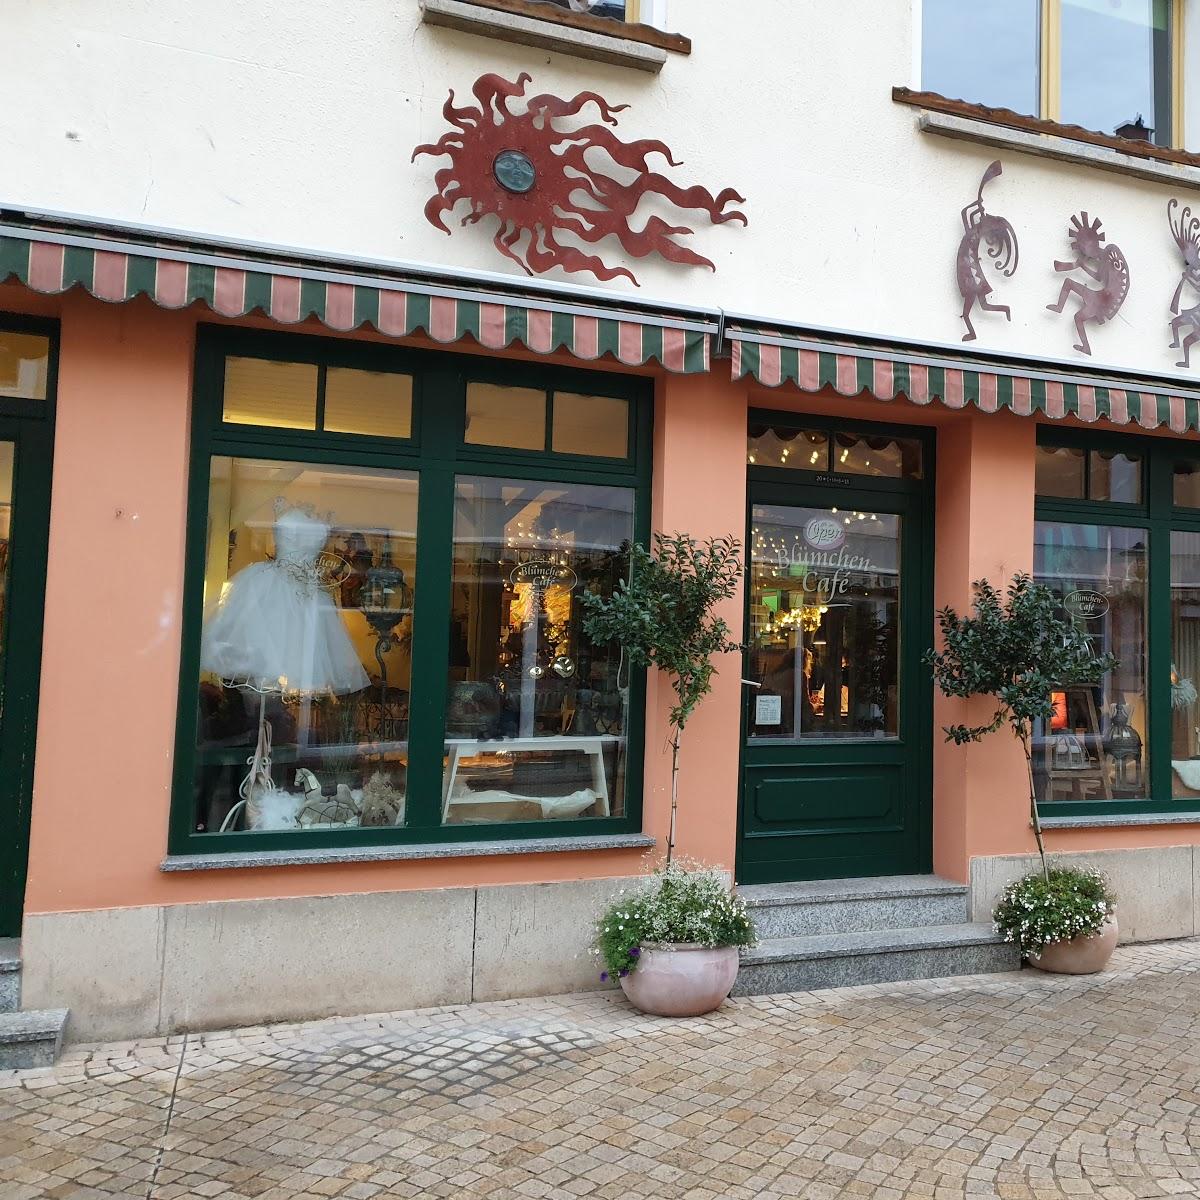 Restaurant "Solewasser-Vitalpark Bad Frankenhausen mit Minigolf im Kurpark" in Bad Frankenhausen-Kyffhäuser